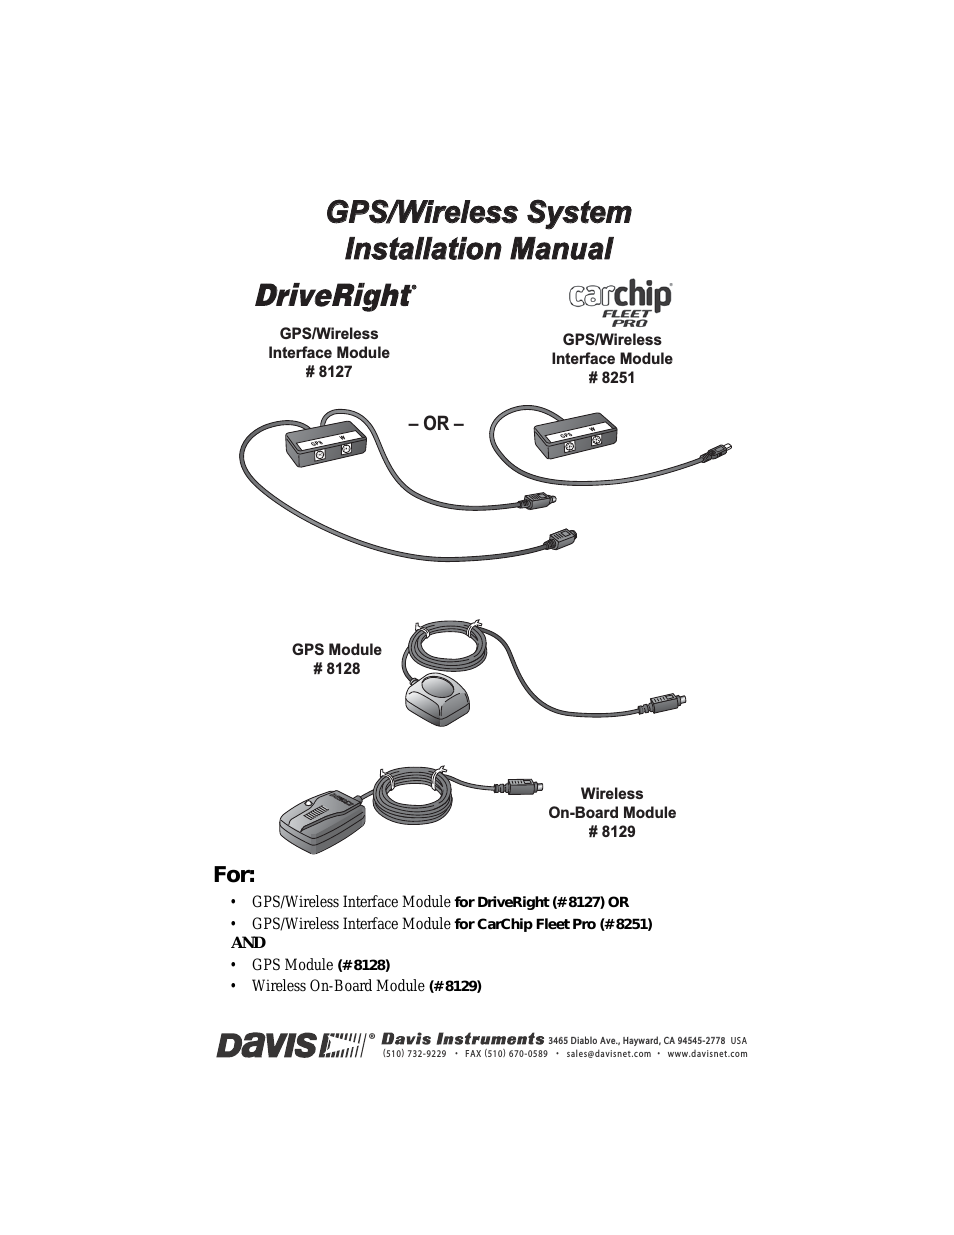 DriveRight 600E GPS Wireless Interface Module Manual (8127, 28, 29, 8251)